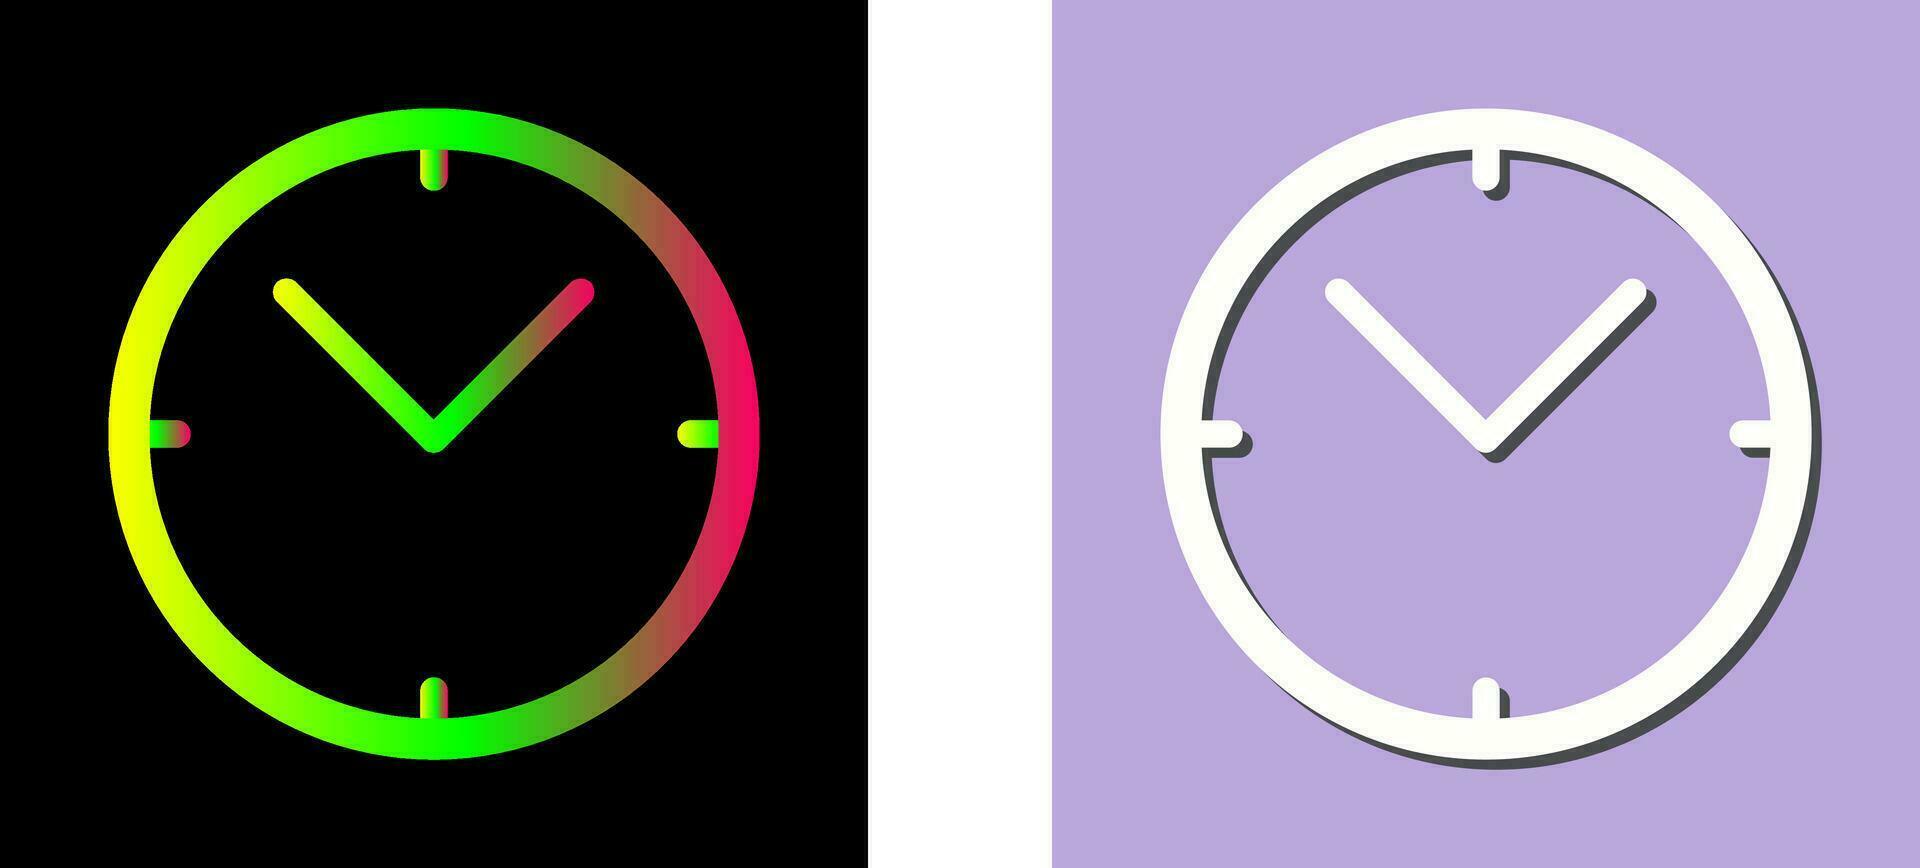 Unique Clock Vector Icon